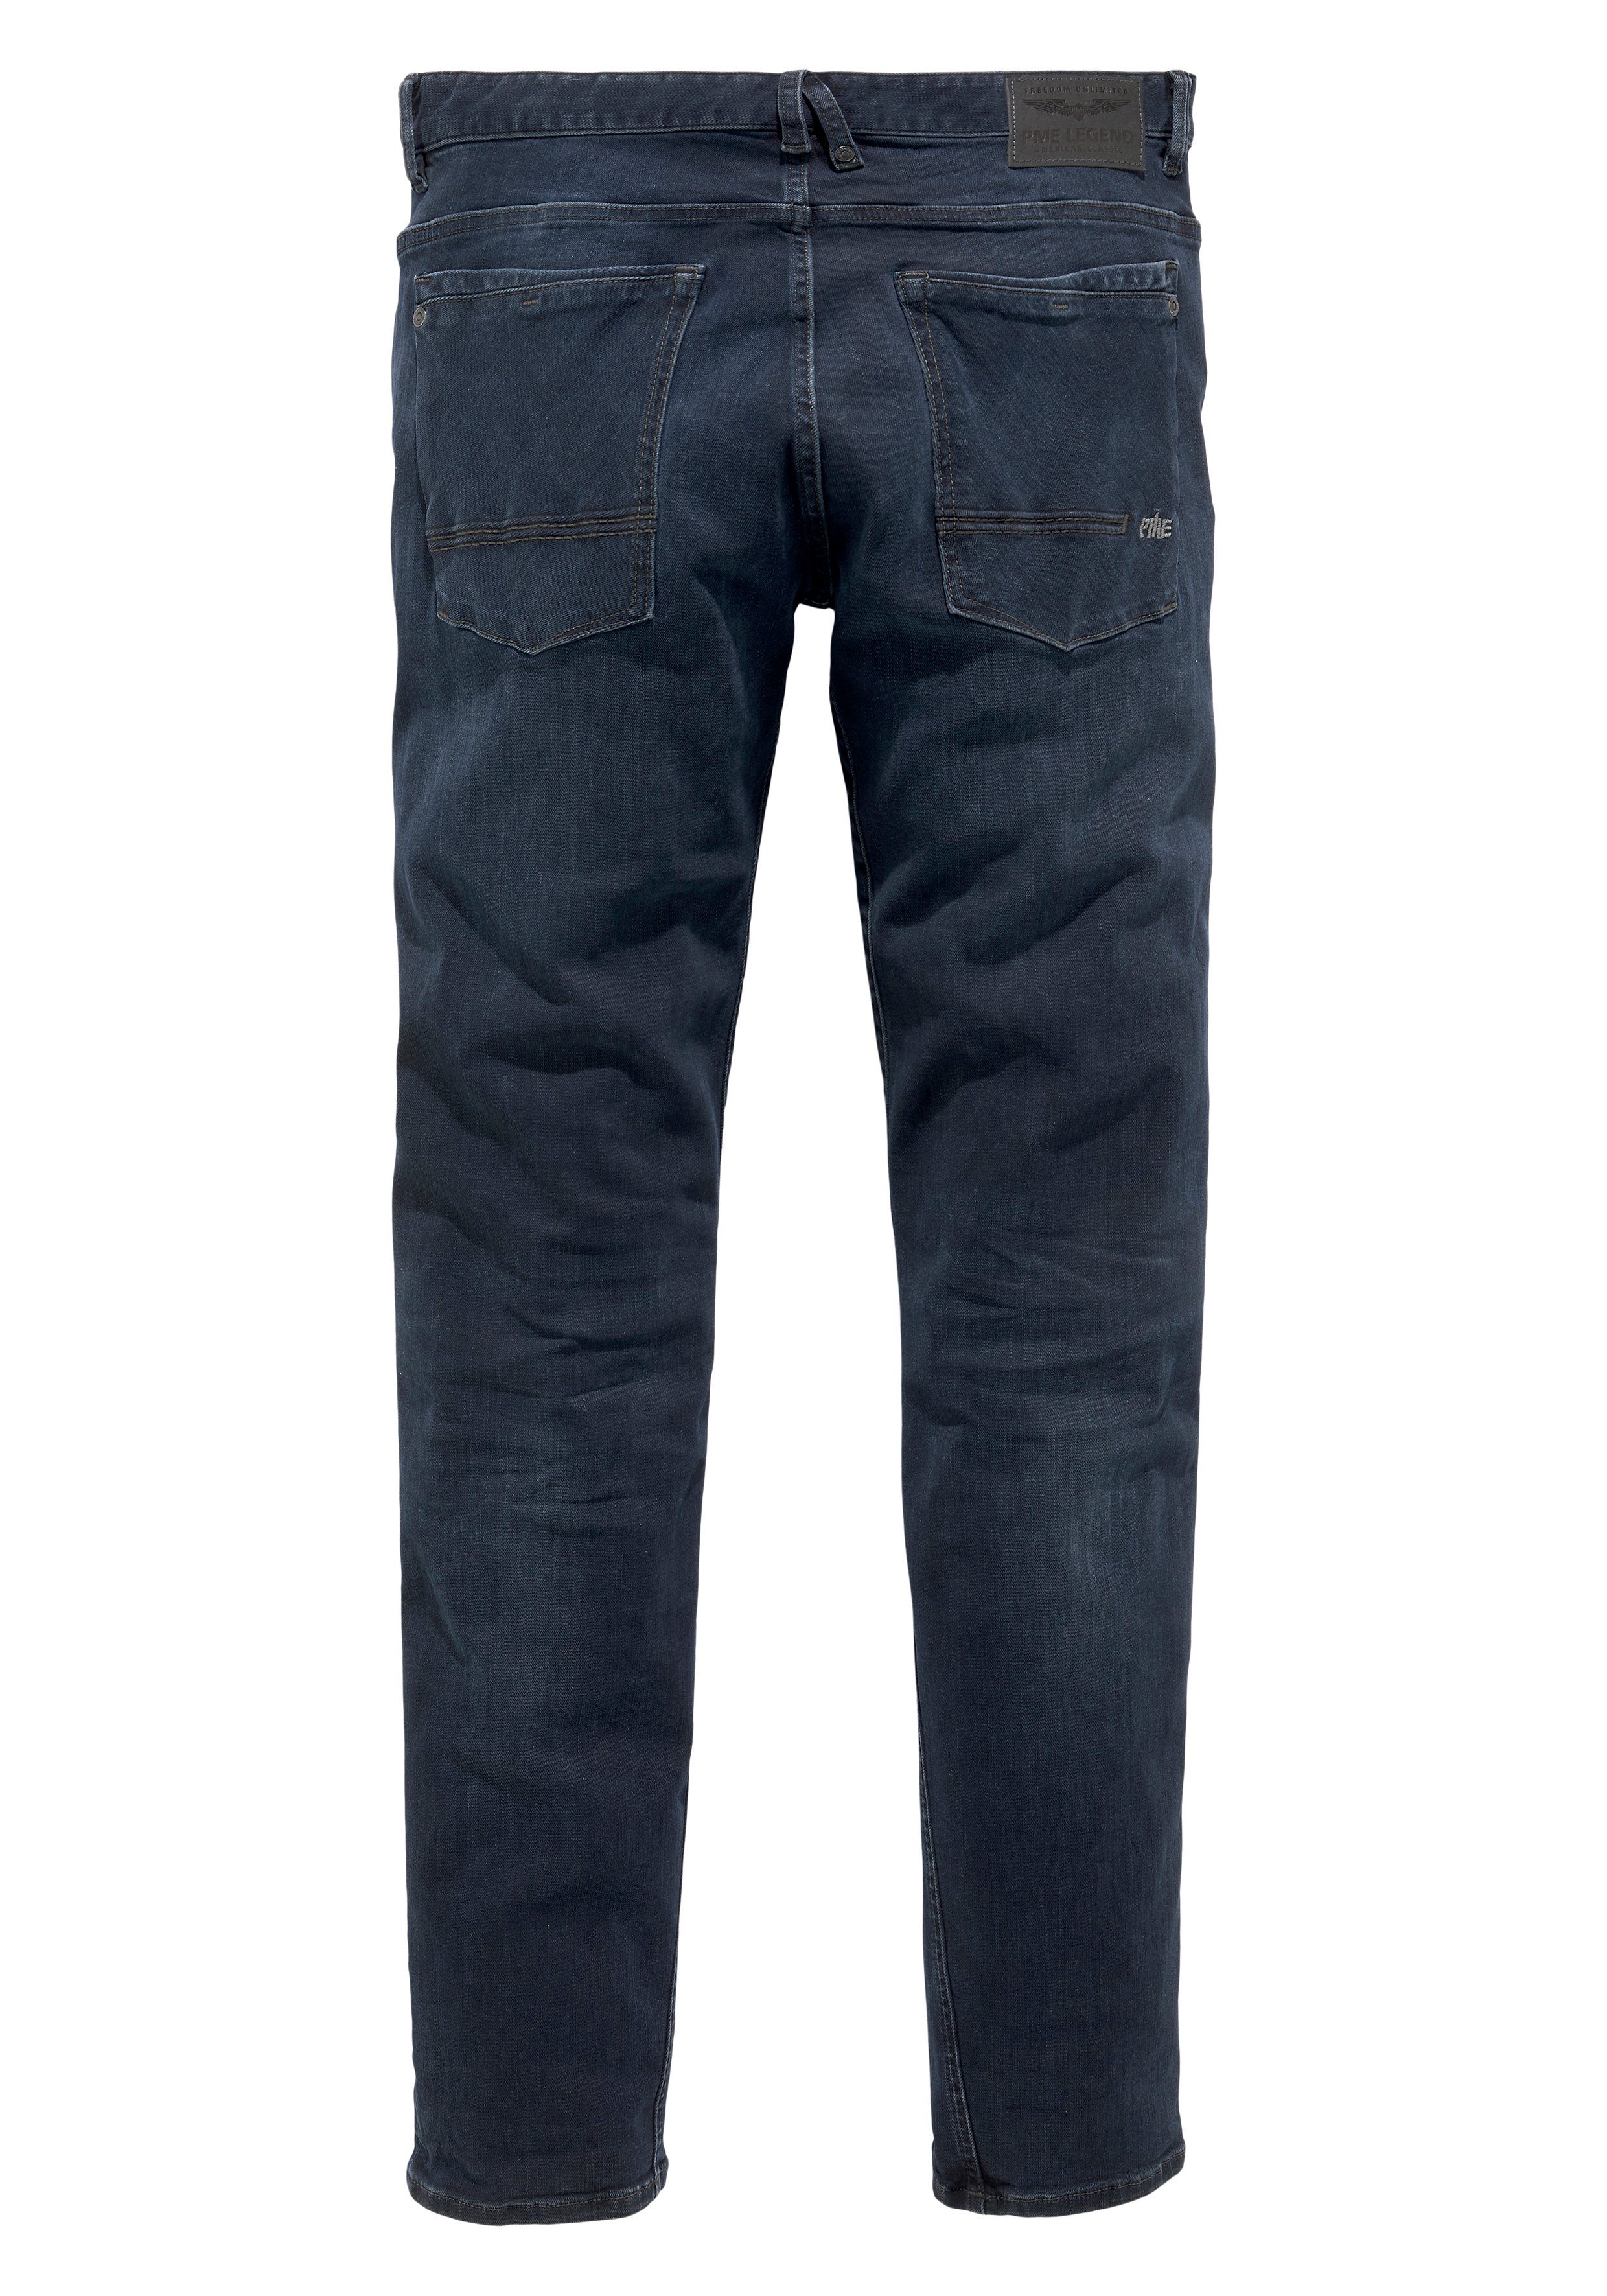 PME Straight-Jeans black Commander blue 3.0 LEGEND